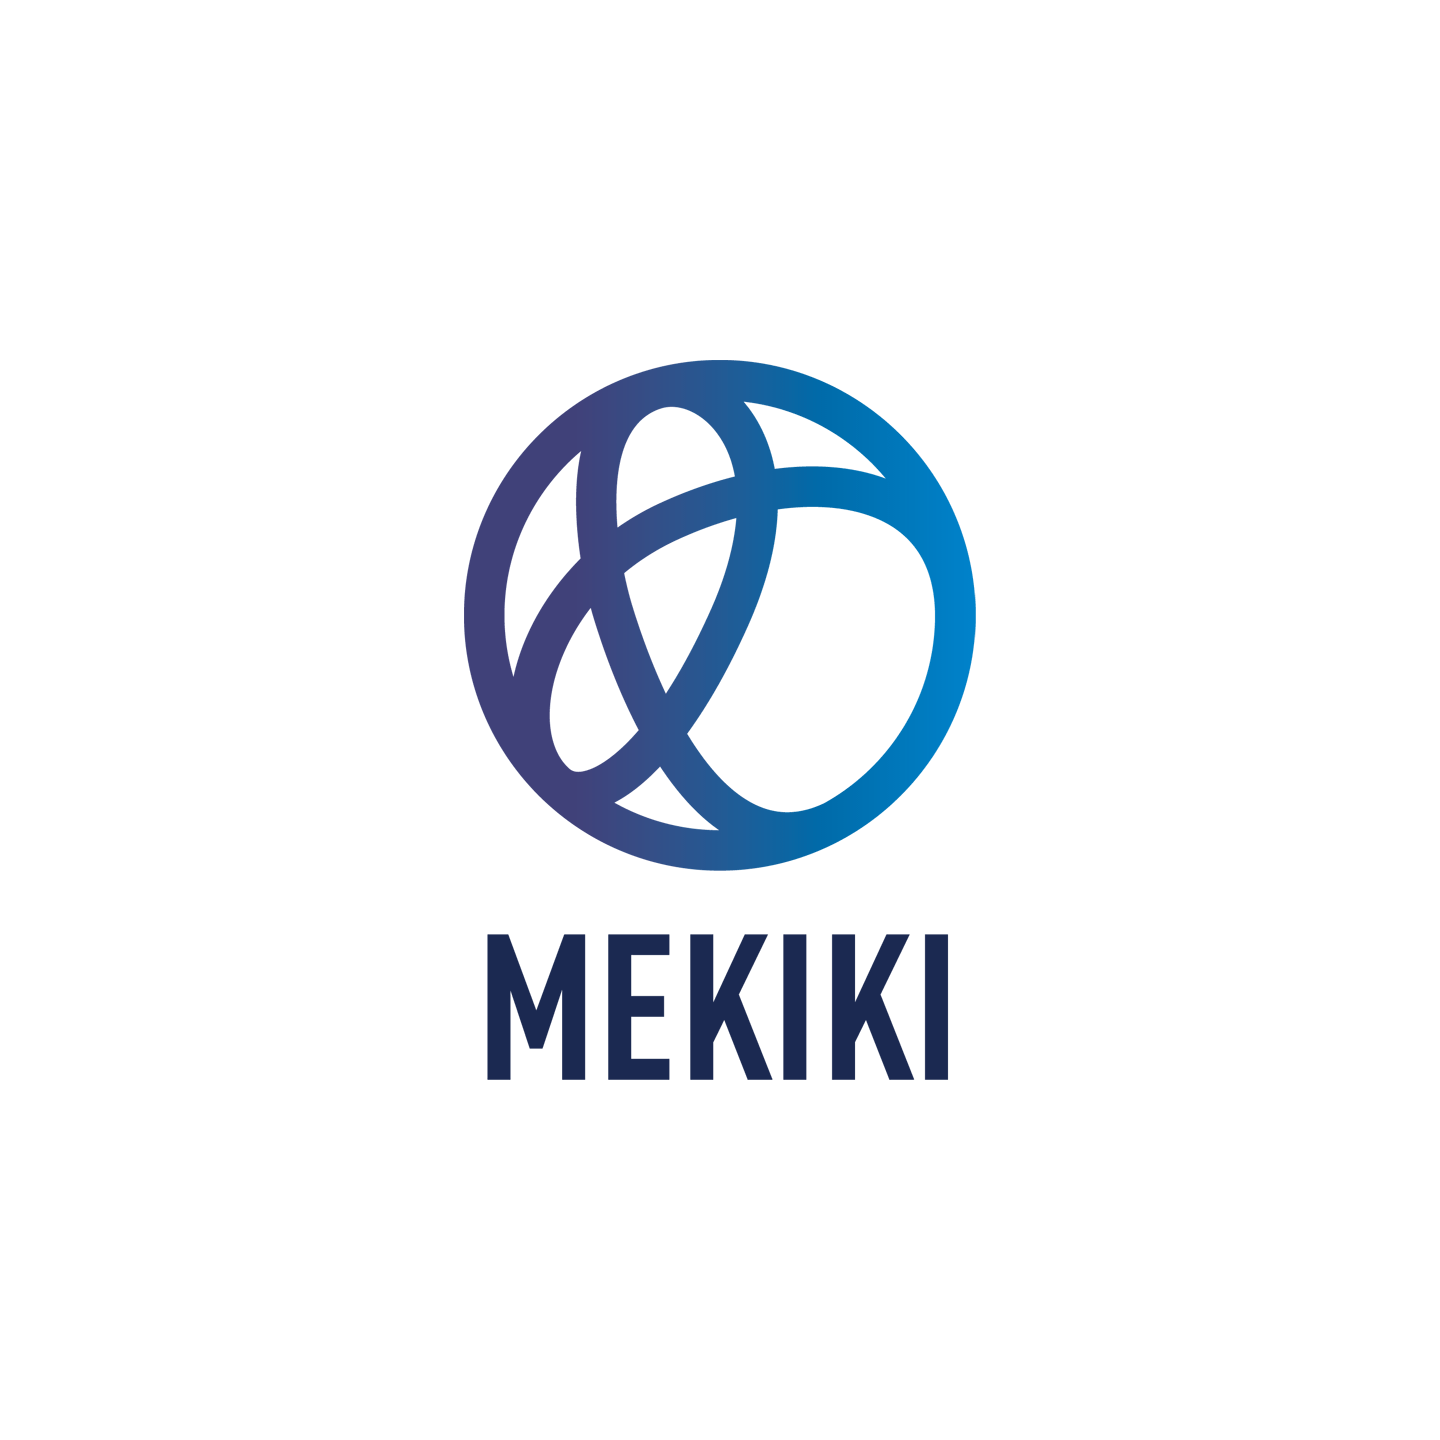 株式会社メキキ Mekiki co, ltd.